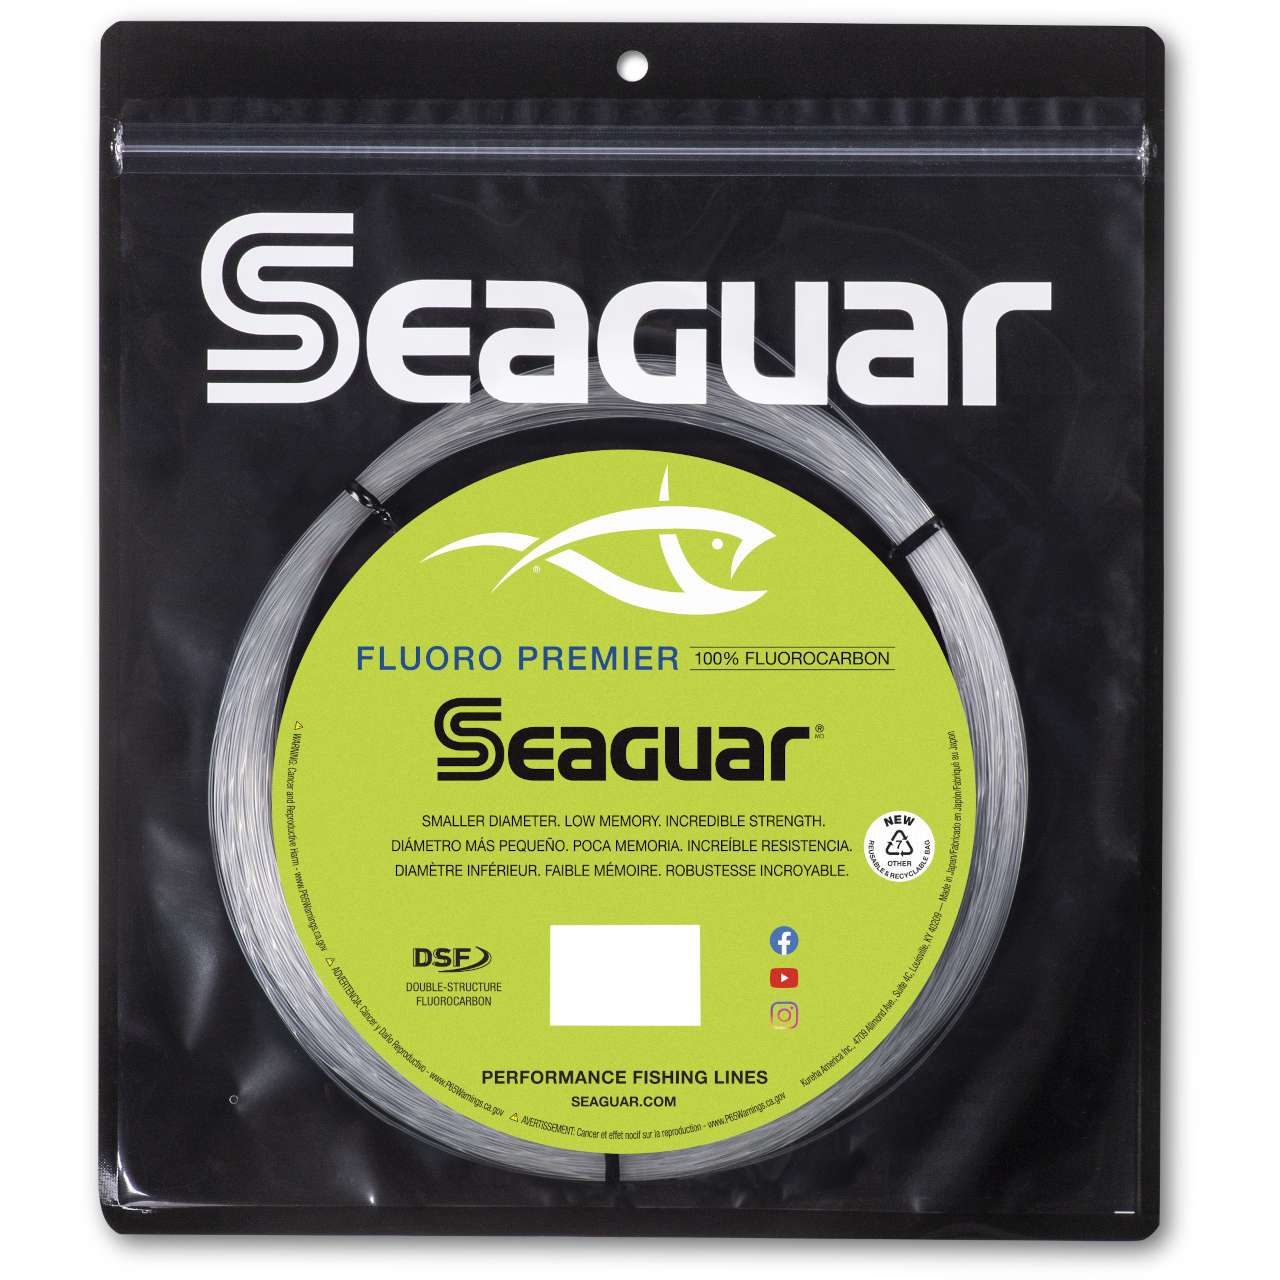 Seaguar Gold Label Fluorocarbon Leader 50 Yards 50 lb